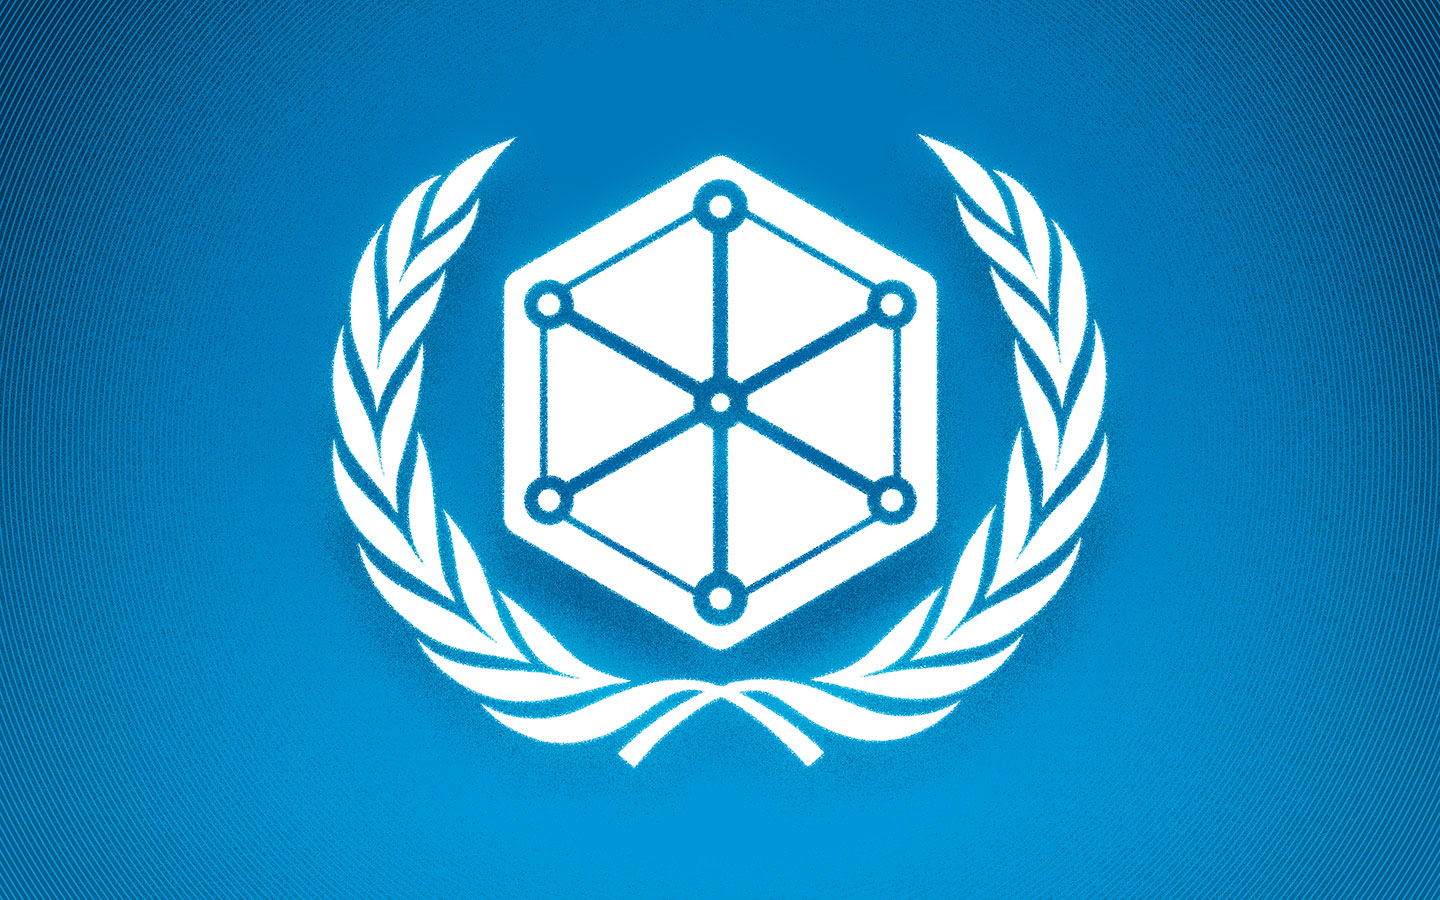 Negociaciones globales sobre ciberseguridad: R3D participa en la quinta sesión del OEWG de la ONU.